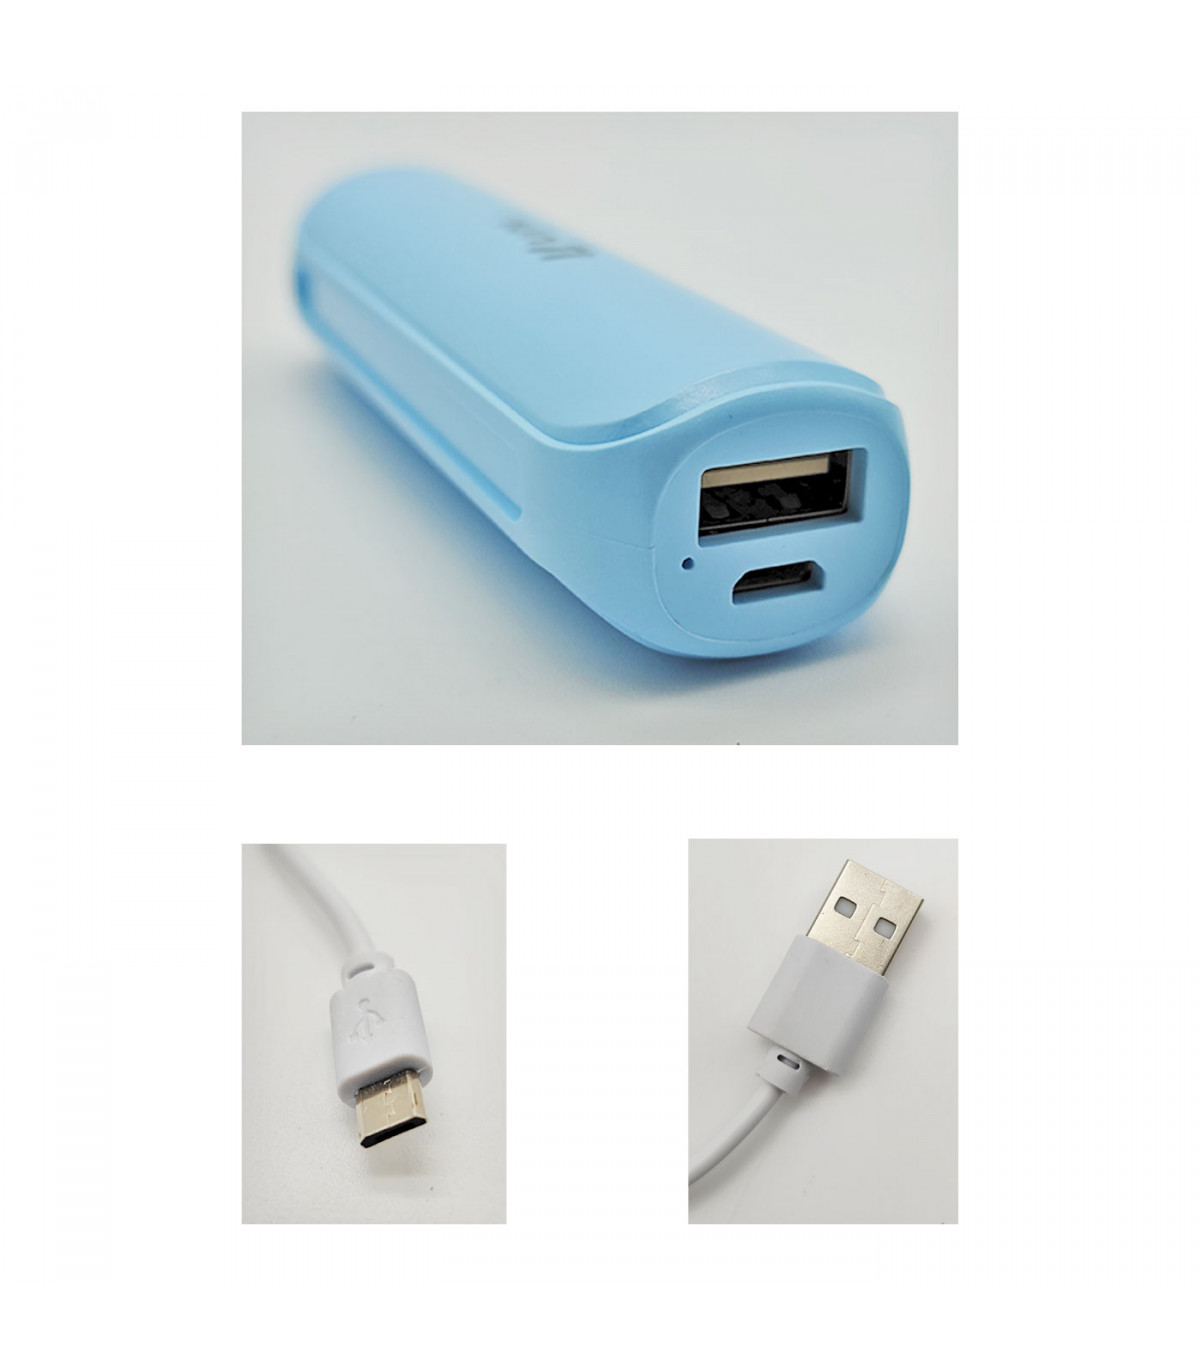 Batería externa azul 2600 mAh, 1.0A, cable micro-USB, indicador carga LED,  móvil, tablet, mp3, e-book, compatible con Xiaomi, Hu